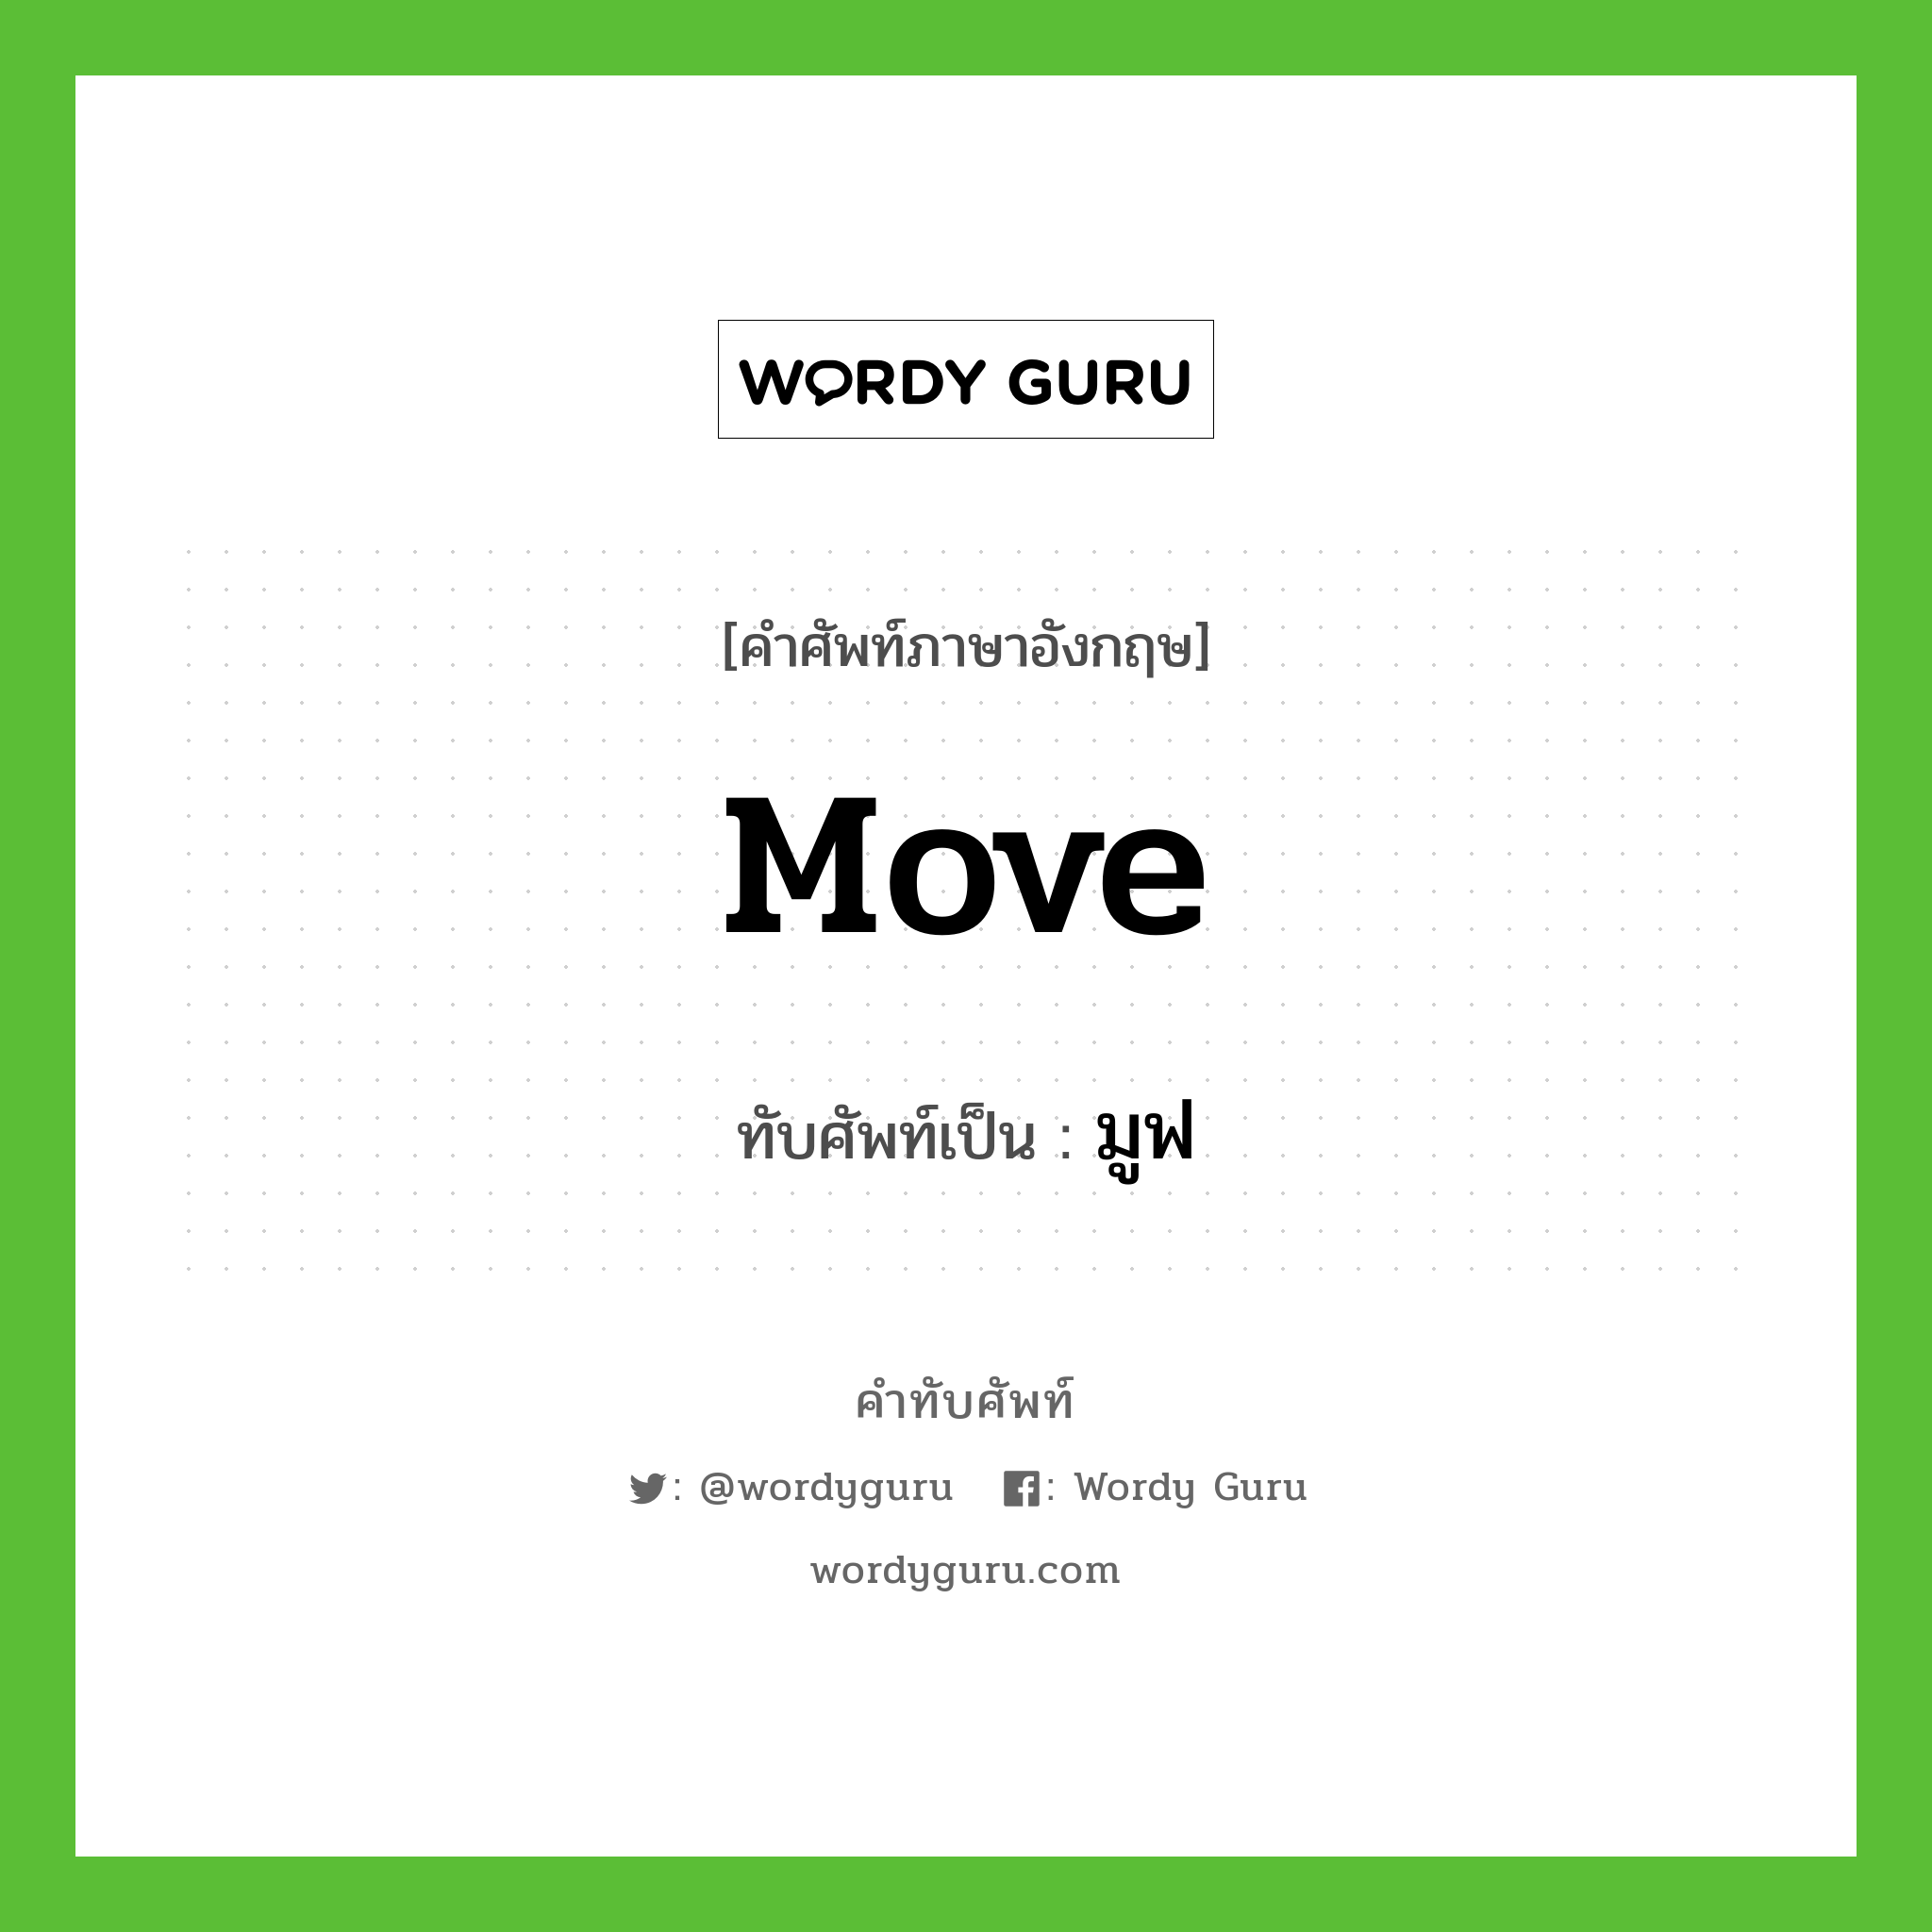 move เขียนเป็นคำไทยว่าอะไร?, คำศัพท์ภาษาอังกฤษ move ทับศัพท์เป็น มูฟ